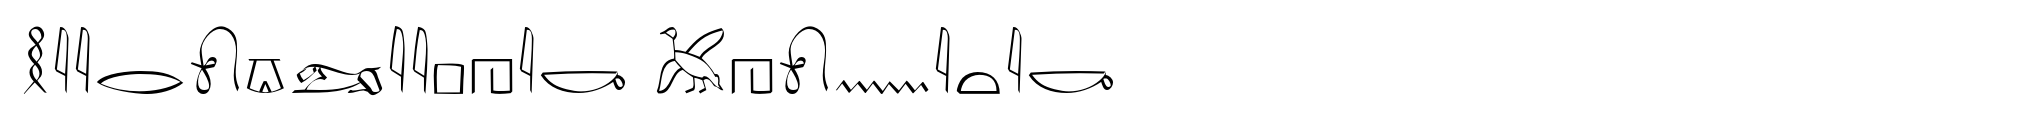 Hieroglyphic Phonetic image